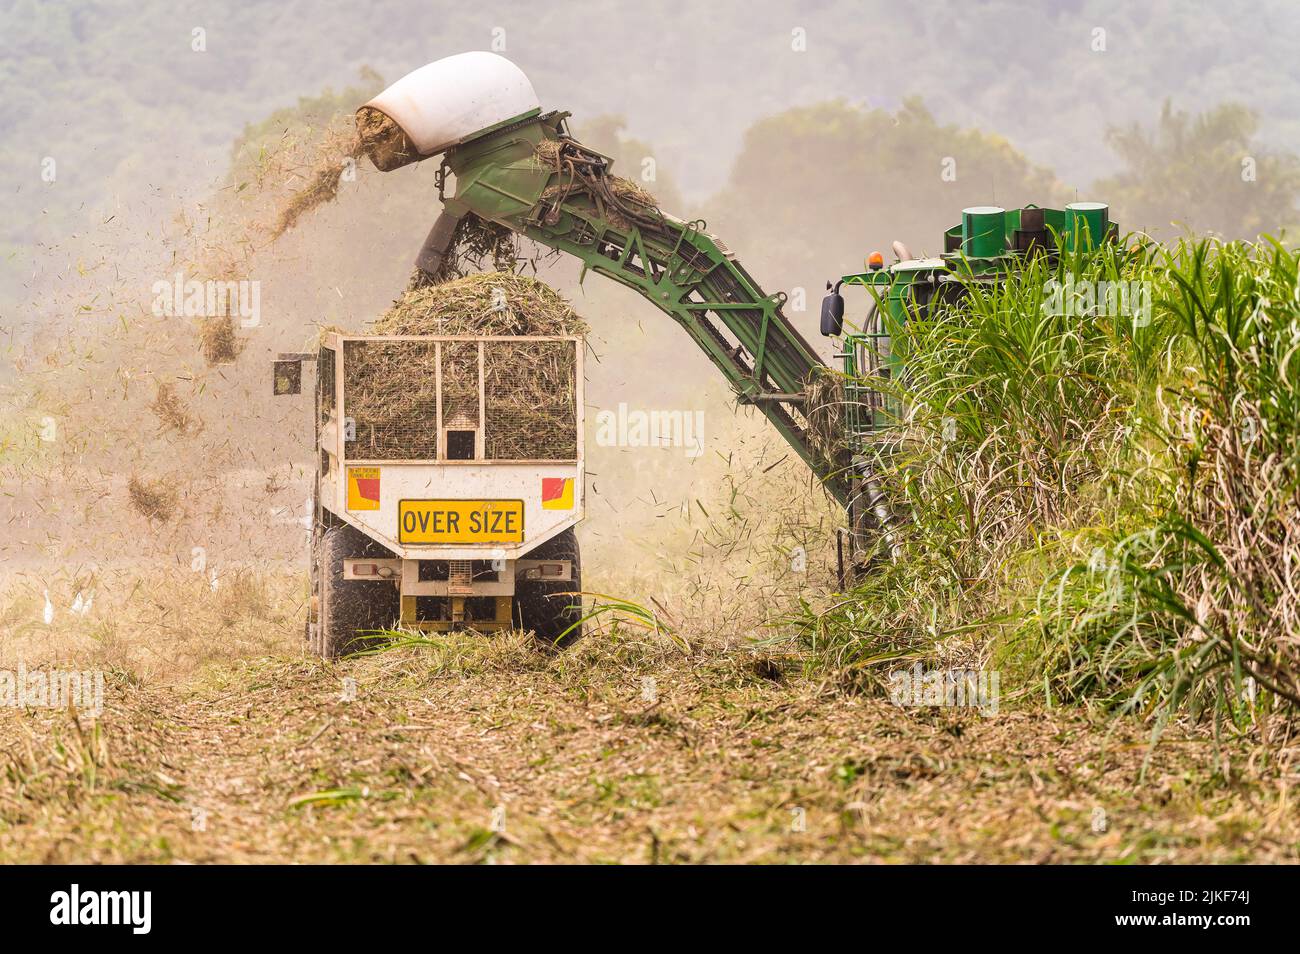 Les travailleurs agricoles de canne à sucre dans une récolteuse de canne et une poubelle à canne suivante lorsqu'ils se déplacent vers le haut et le bas du champ récoltant de la canne mûre à Cairns, Queensland, en Australie. Banque D'Images